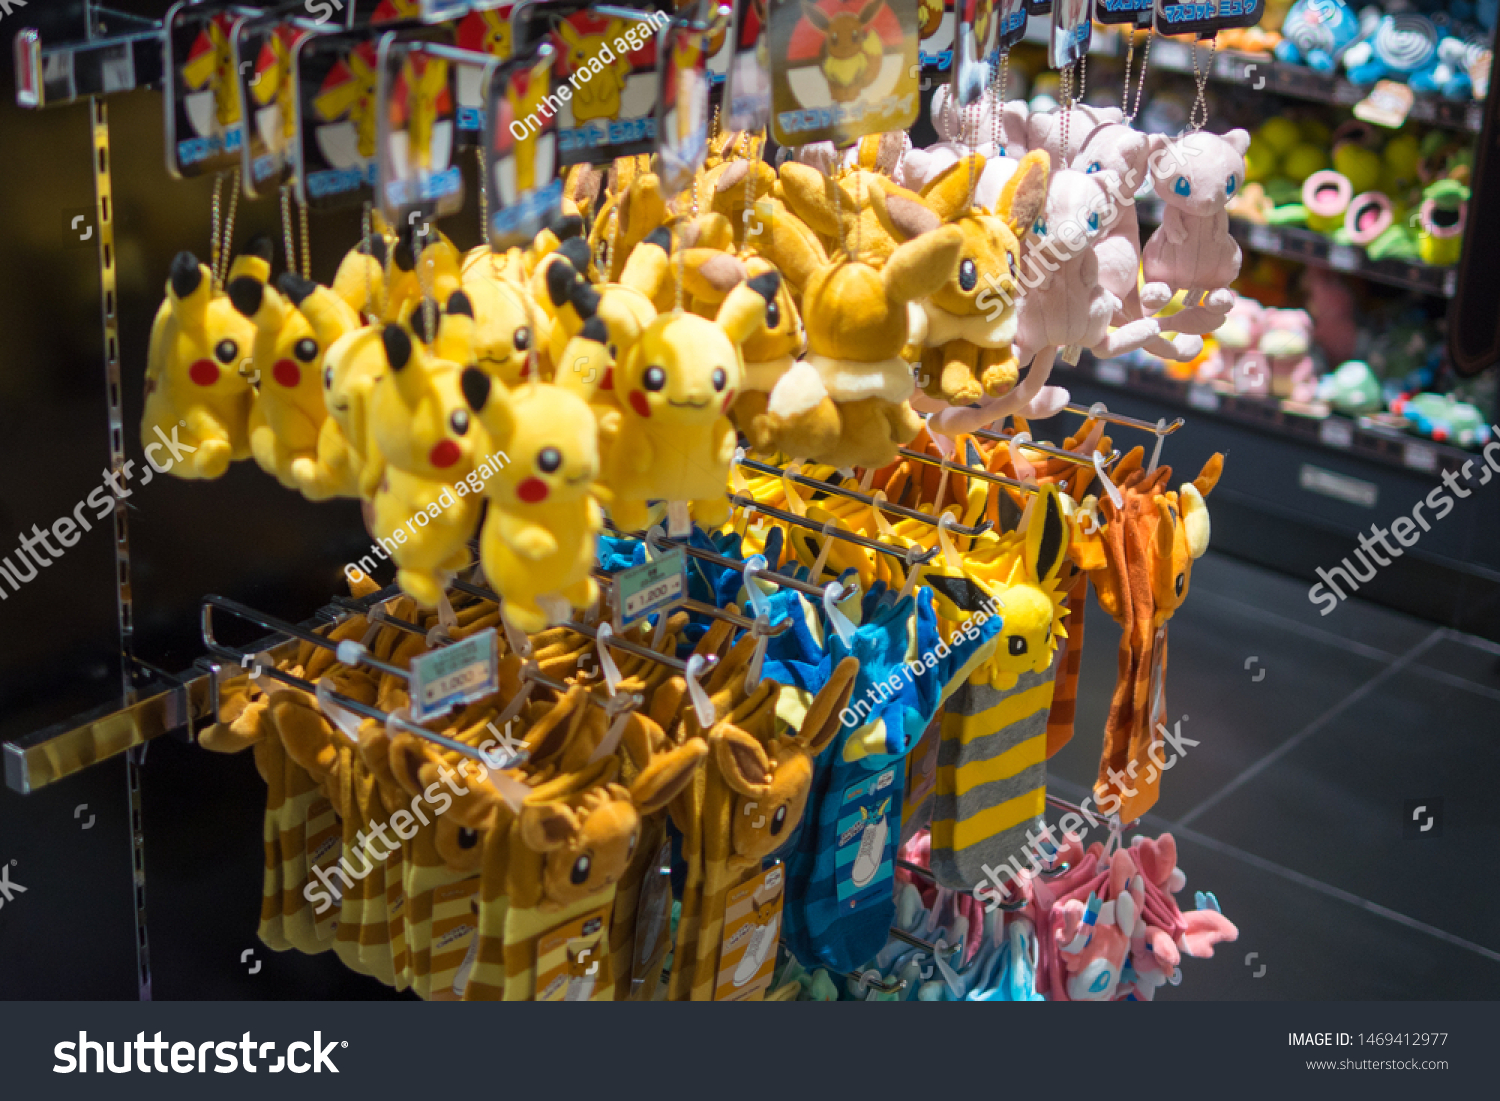 Pikachu Raichu Pokemon Store Kyoto Japan Objects Stock Image